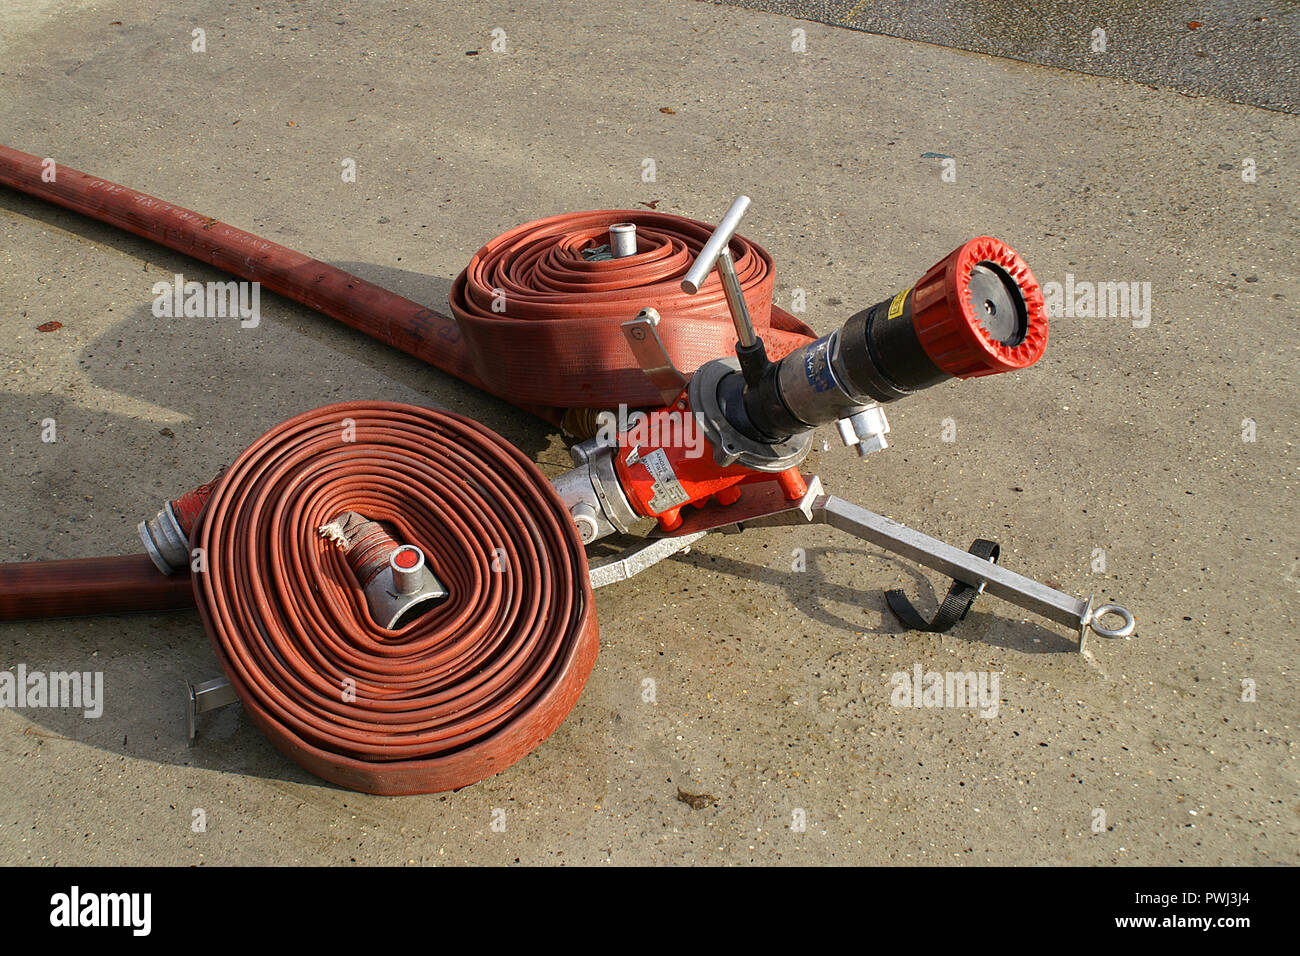 fire fighting equipment, ground monitor Stock Photo